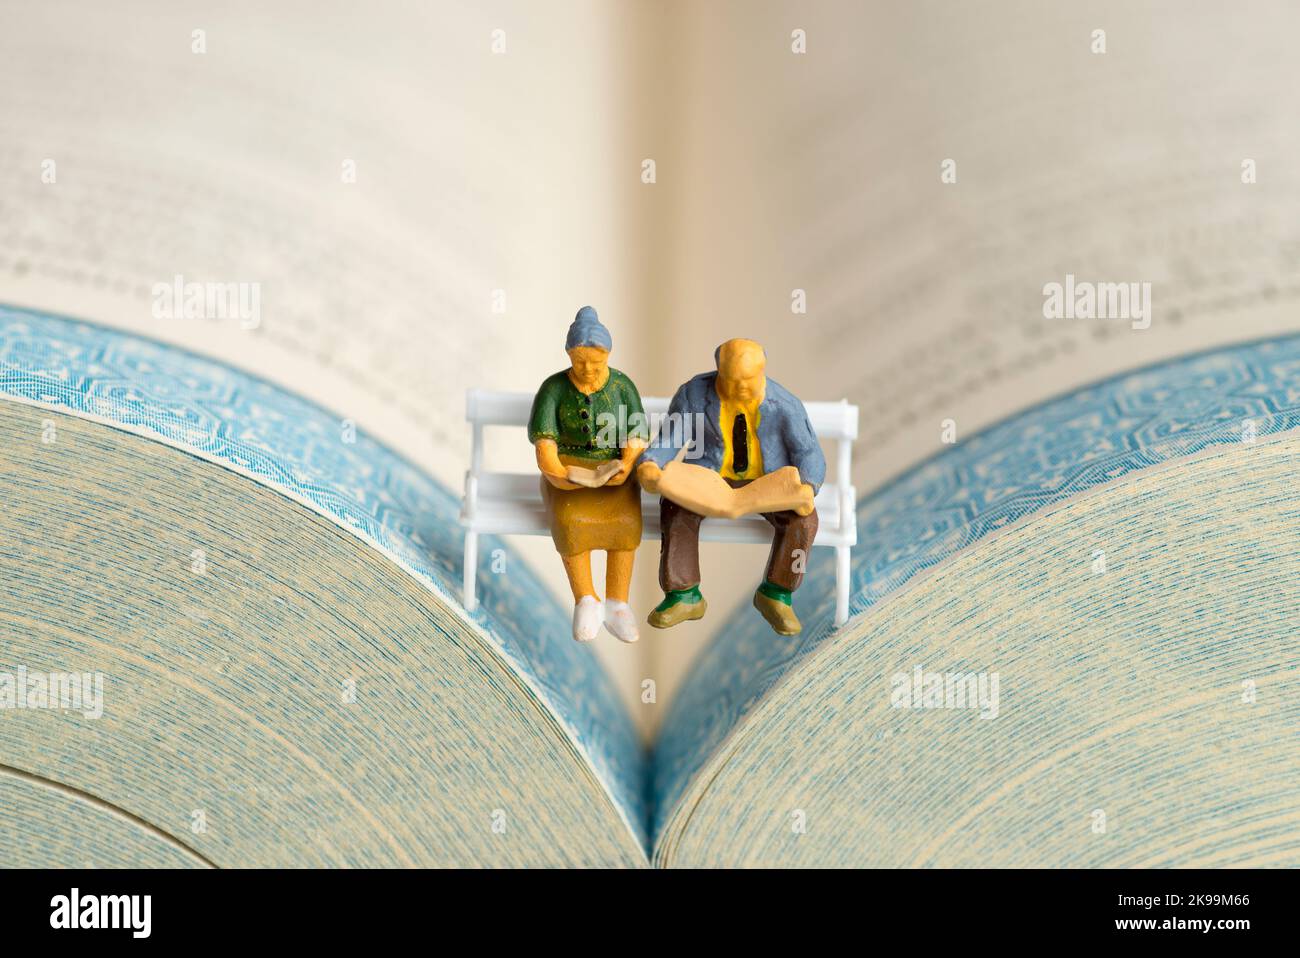 Gros plan de figurines miniatures d'un couple âgé lisant un livre et un journal sur un banc. Banque D'Images